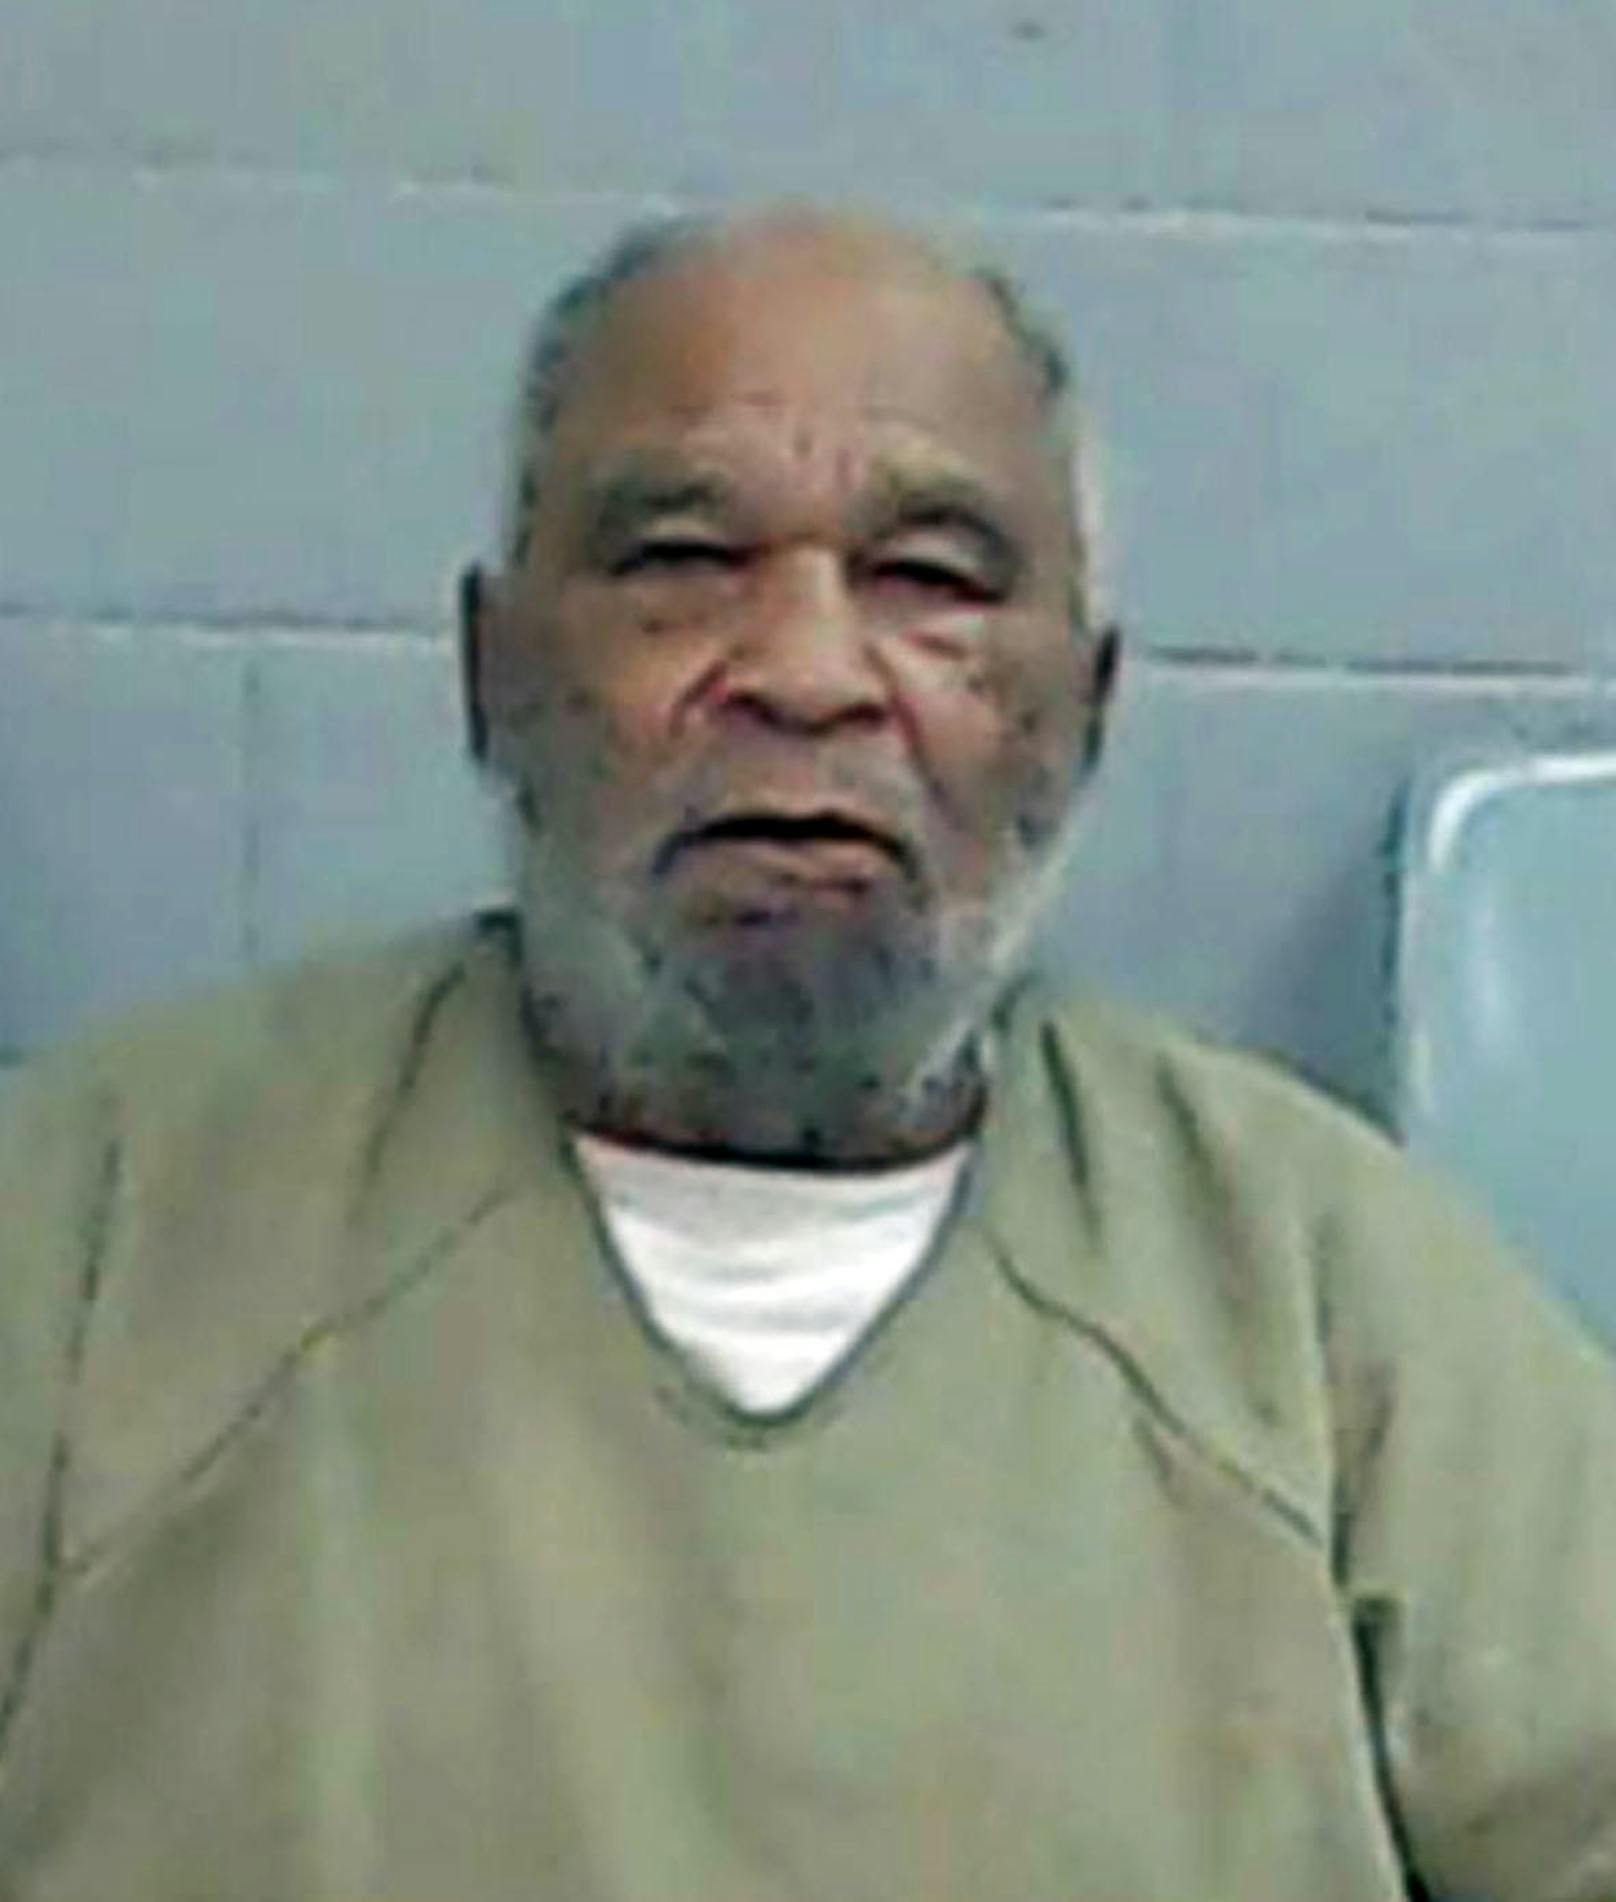 Der 78-jährige Samuel Little ist wahrscheinlich der schlimmste Serienmörder der US-Geschichte. Zunächst war er wegen Drogenvergehen festgenommen worden, gestand dann aber Dutzende von Morden im Zeitraum von 1970 bis 2005. Er hat 93 Morde gestanden, 43 weitere Geständnisse stehen noch aus, teilte das FBI mit.